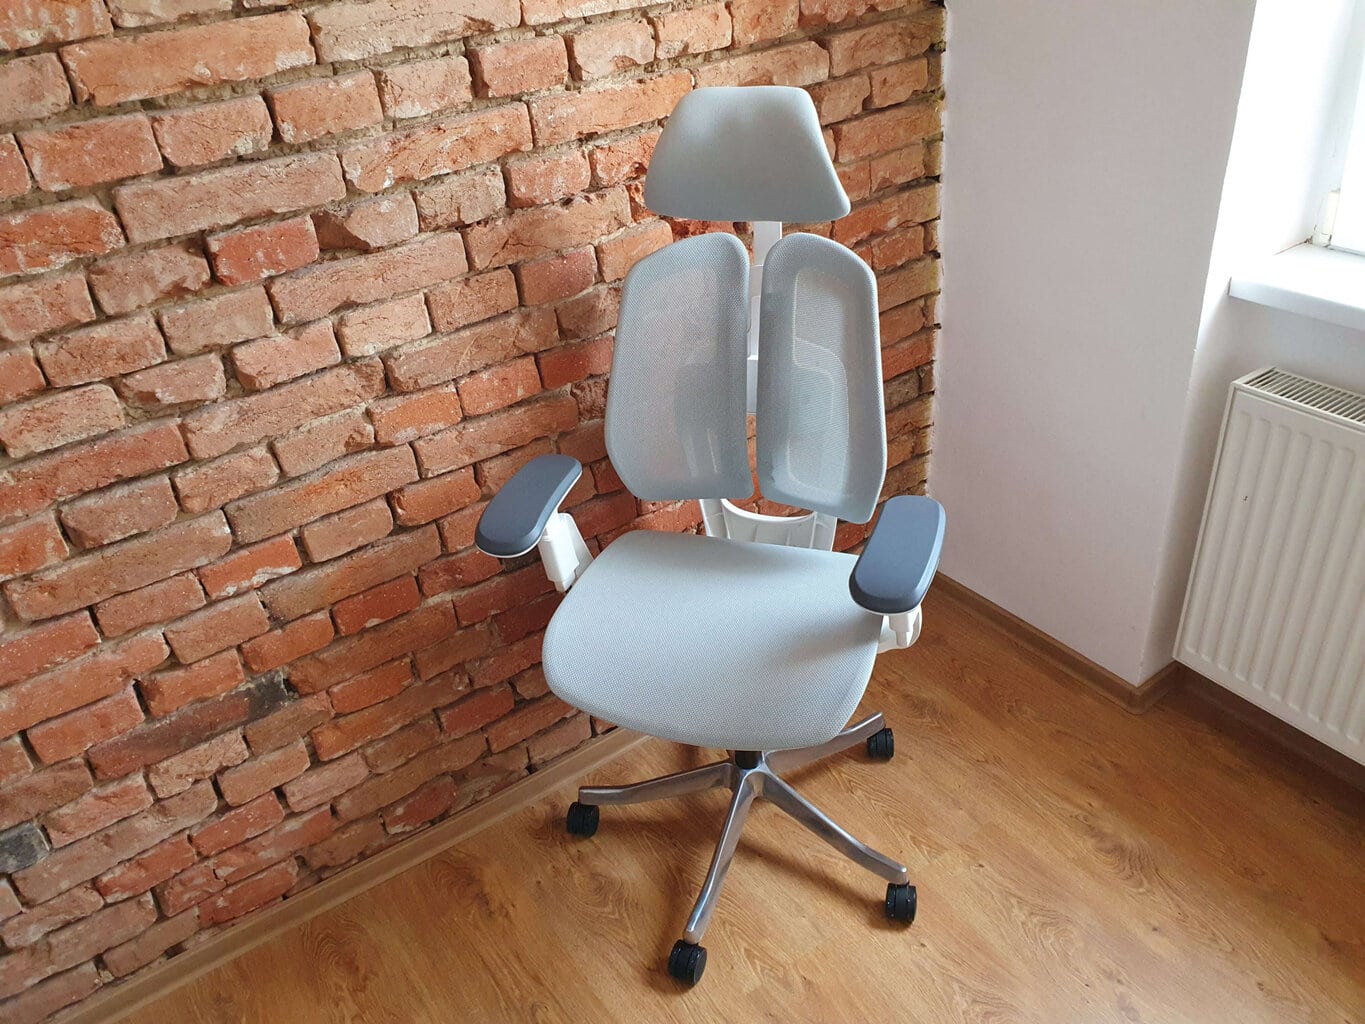 Recenze: kancelářská židle Liftor Active